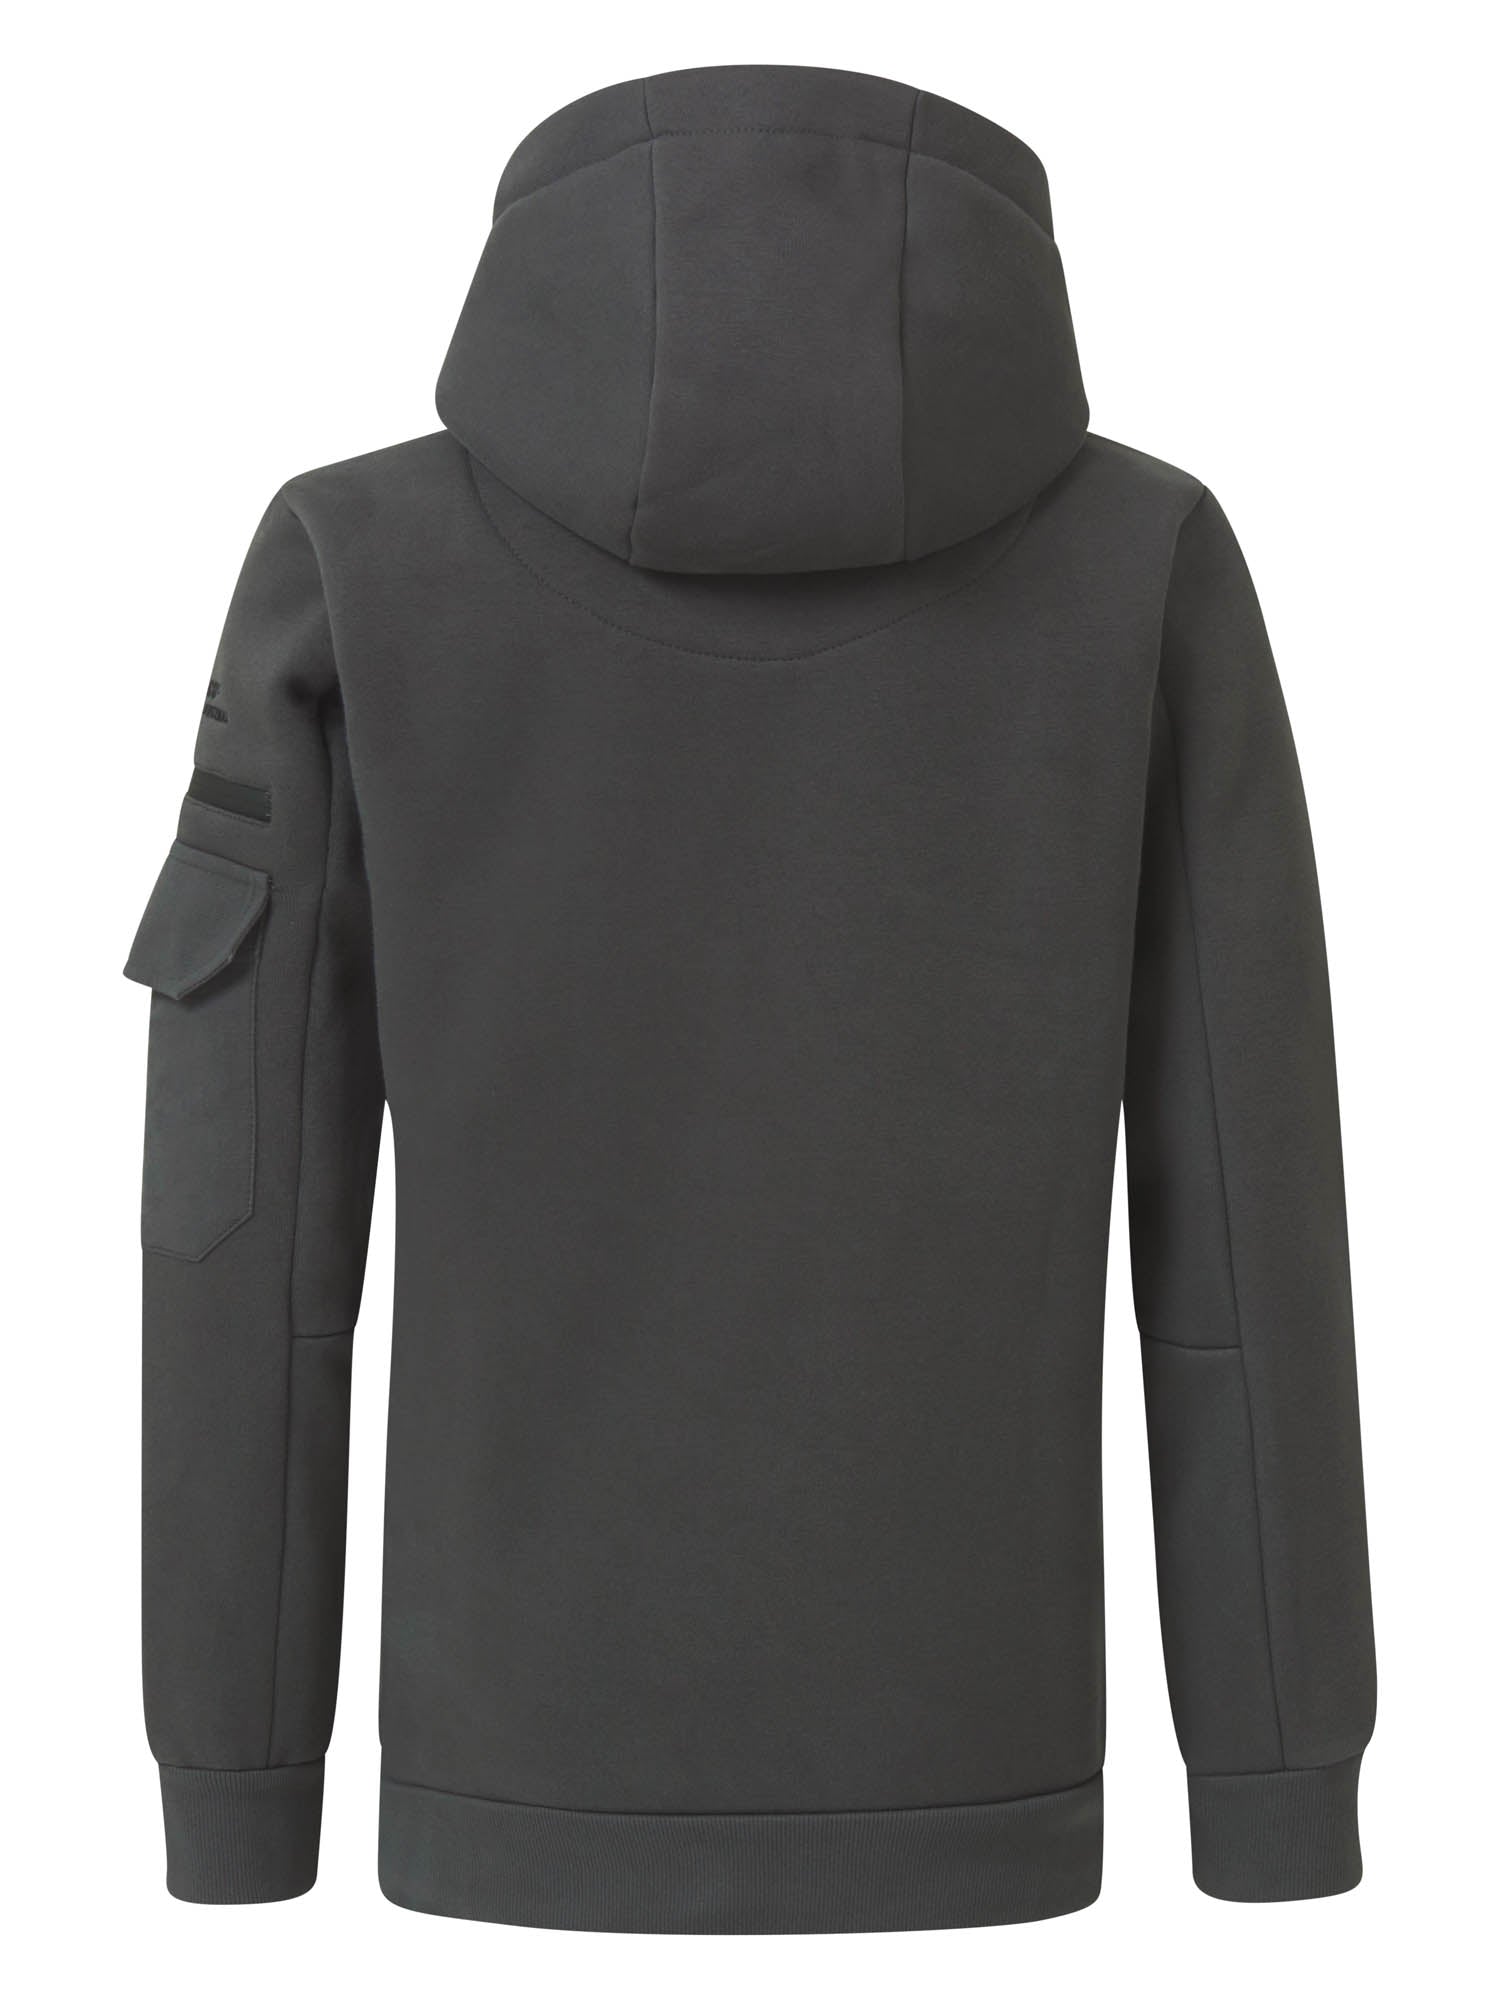 Jongens Sweater Hooded van Petrol in de kleur Metal Grey in maat 164.